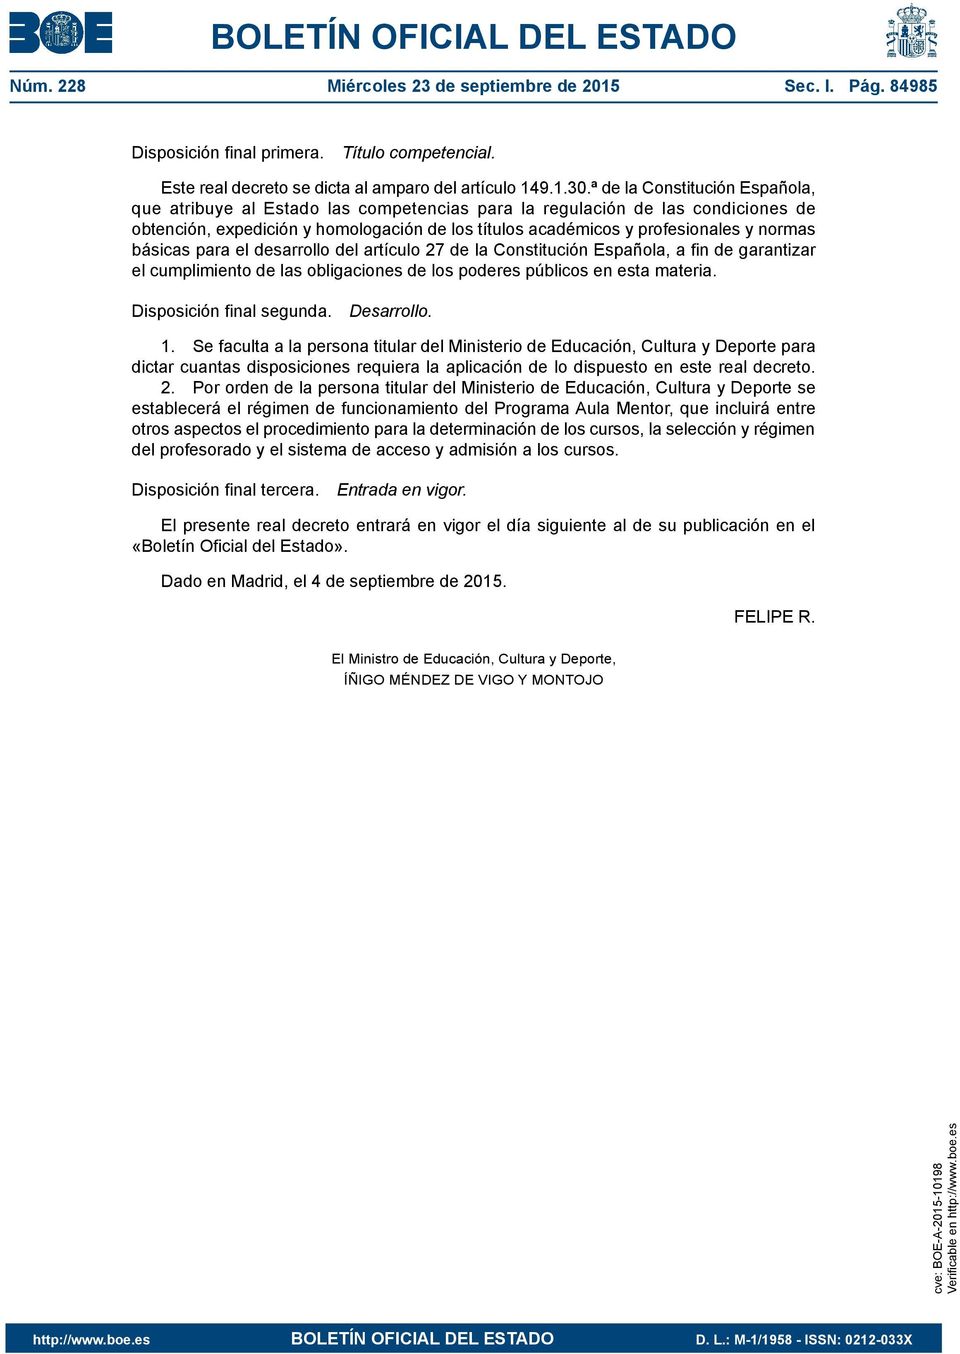 básicas para el desarrollo del artículo 27 de la Constitución Española, a fin de garantizar el cumplimiento de las obligaciones de los poderes públicos en esta materia. Disposición final segunda.